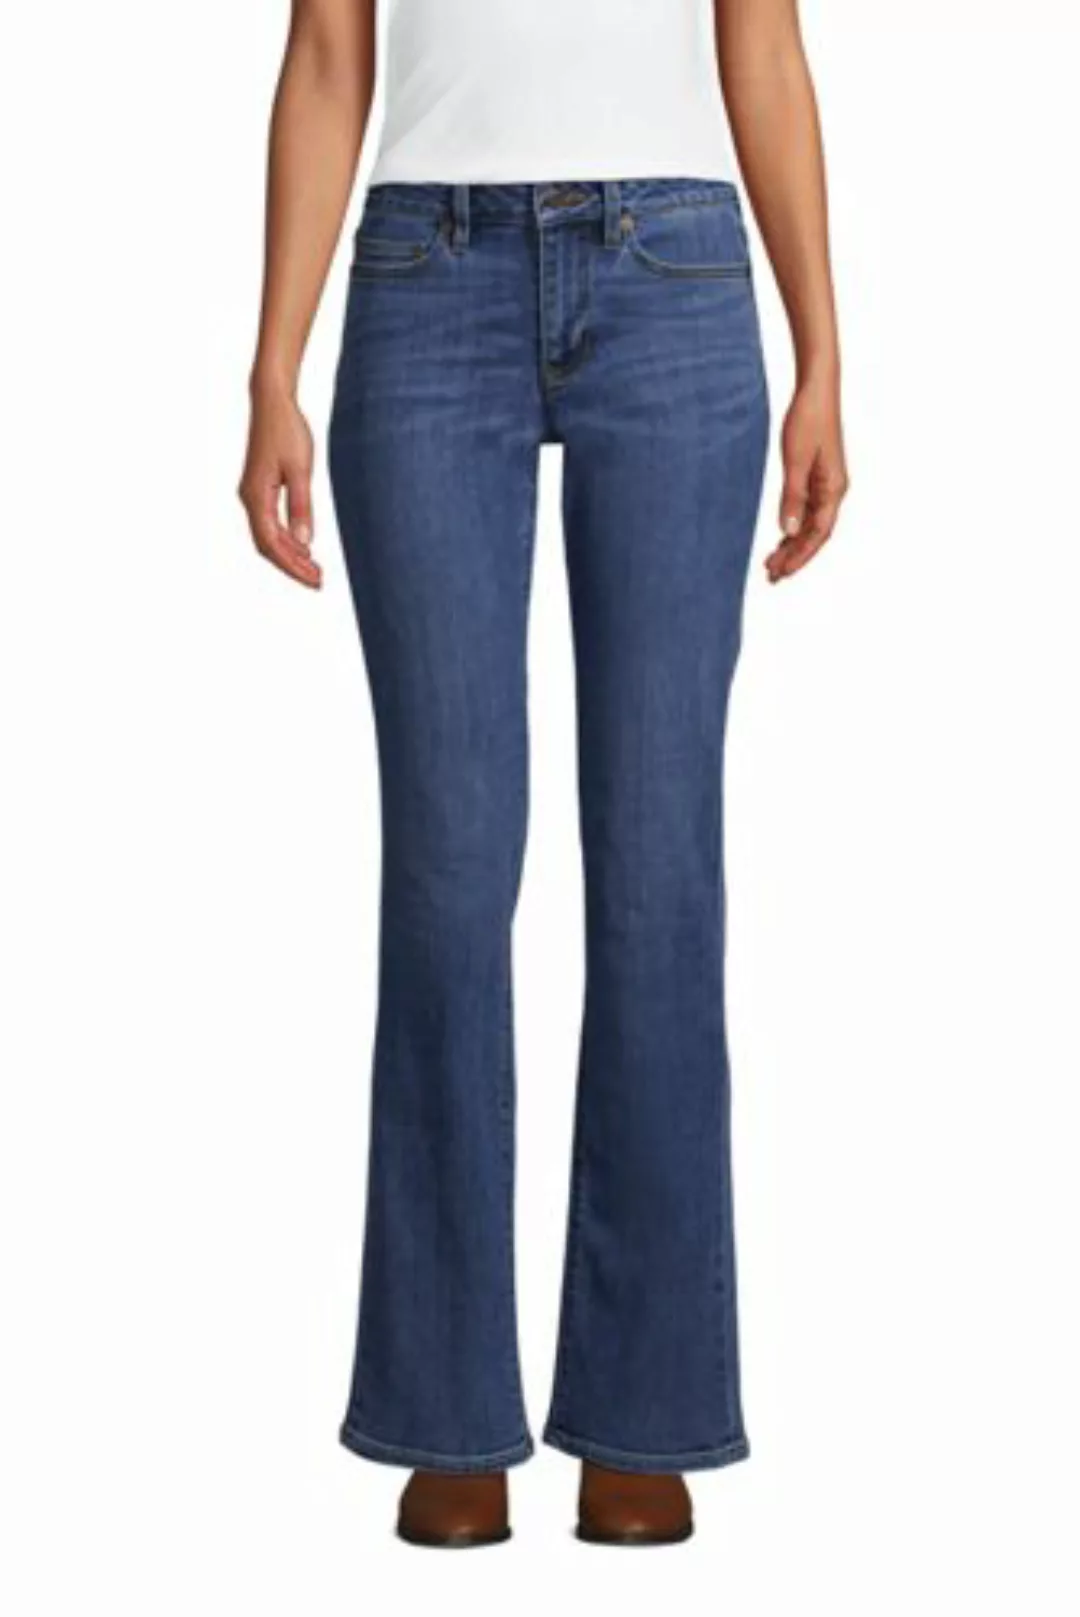 Bootcut Öko-Jeans Mid Waist in Petite-Größe, Damen, Größe: 40 28 Petite, Bl günstig online kaufen